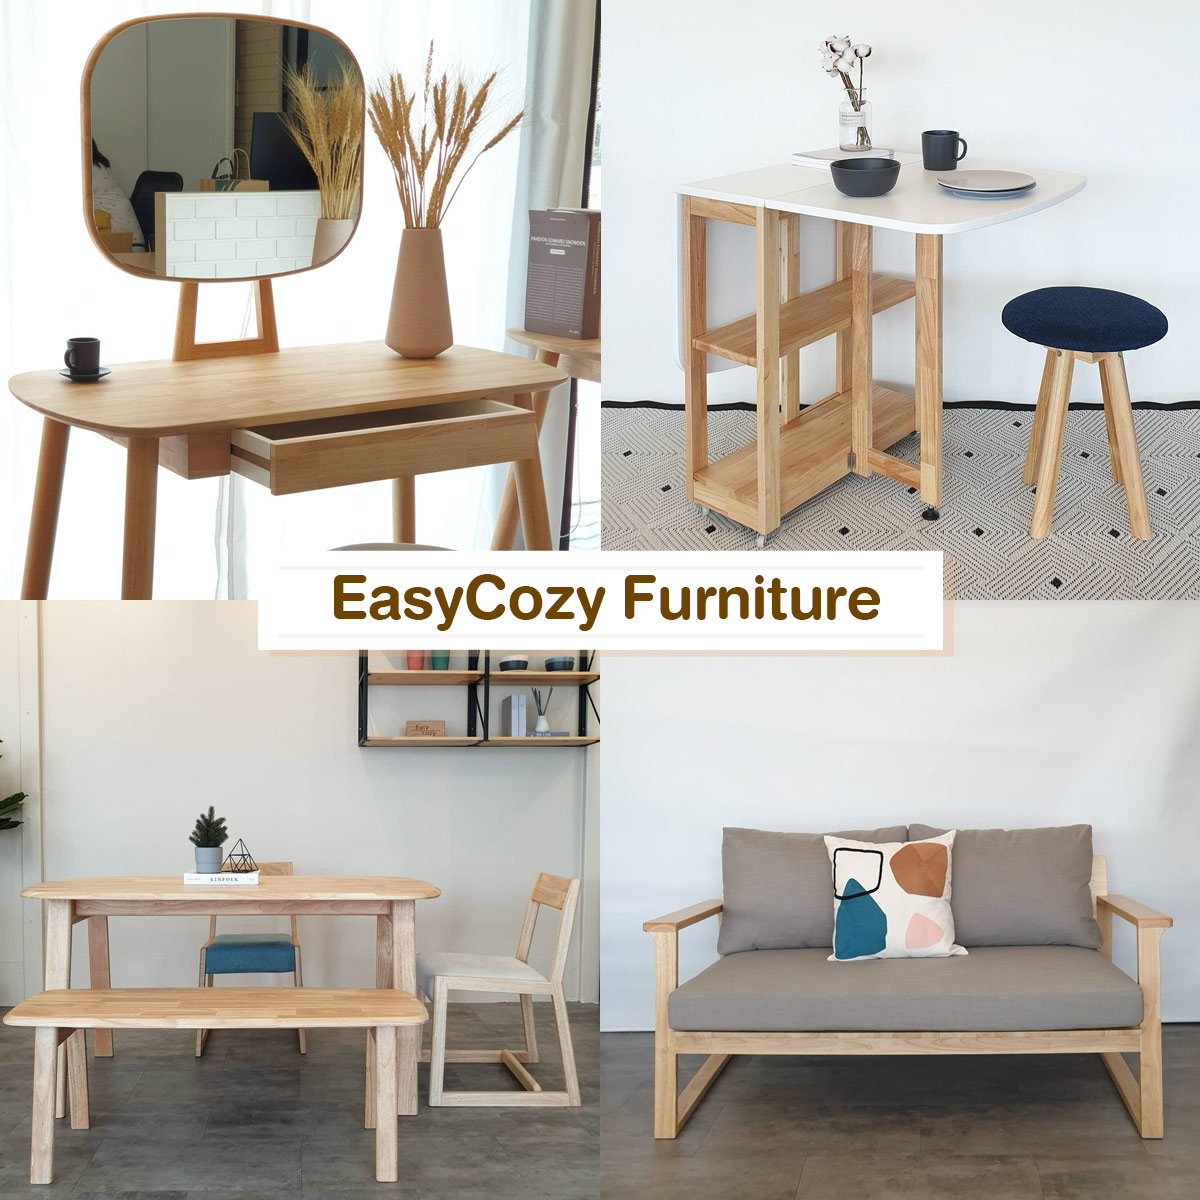 เฟอร์นิเจอร์ไม้แบรนด์ไทย,EasyCozy Furniture